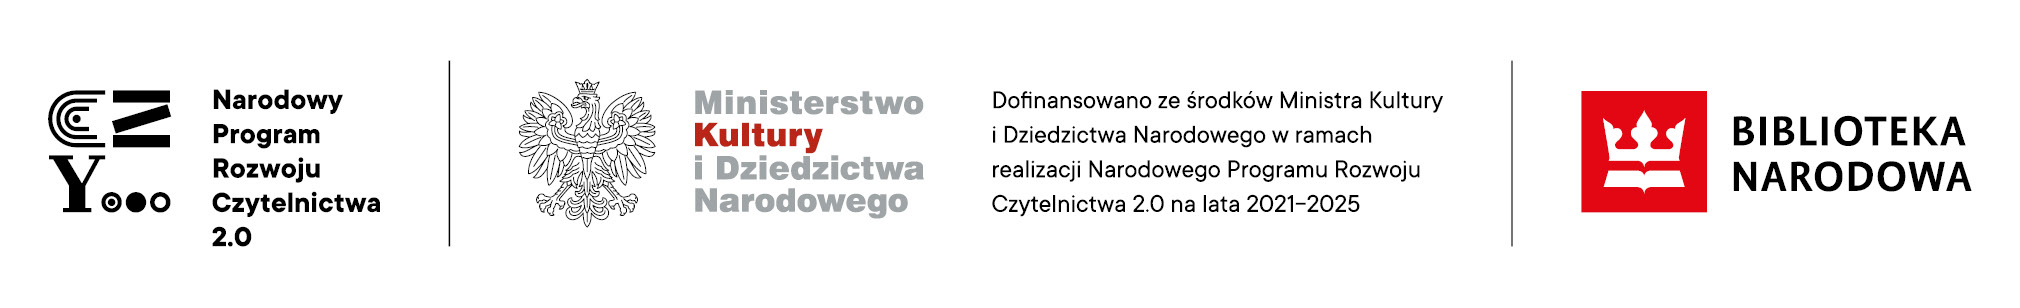 Logotypy Narodowego Programu Rozwoju Czytelnictwa, Ministerstwa Kultury i Dziedzictwa Narodowego, Biblioteki Narodowej.